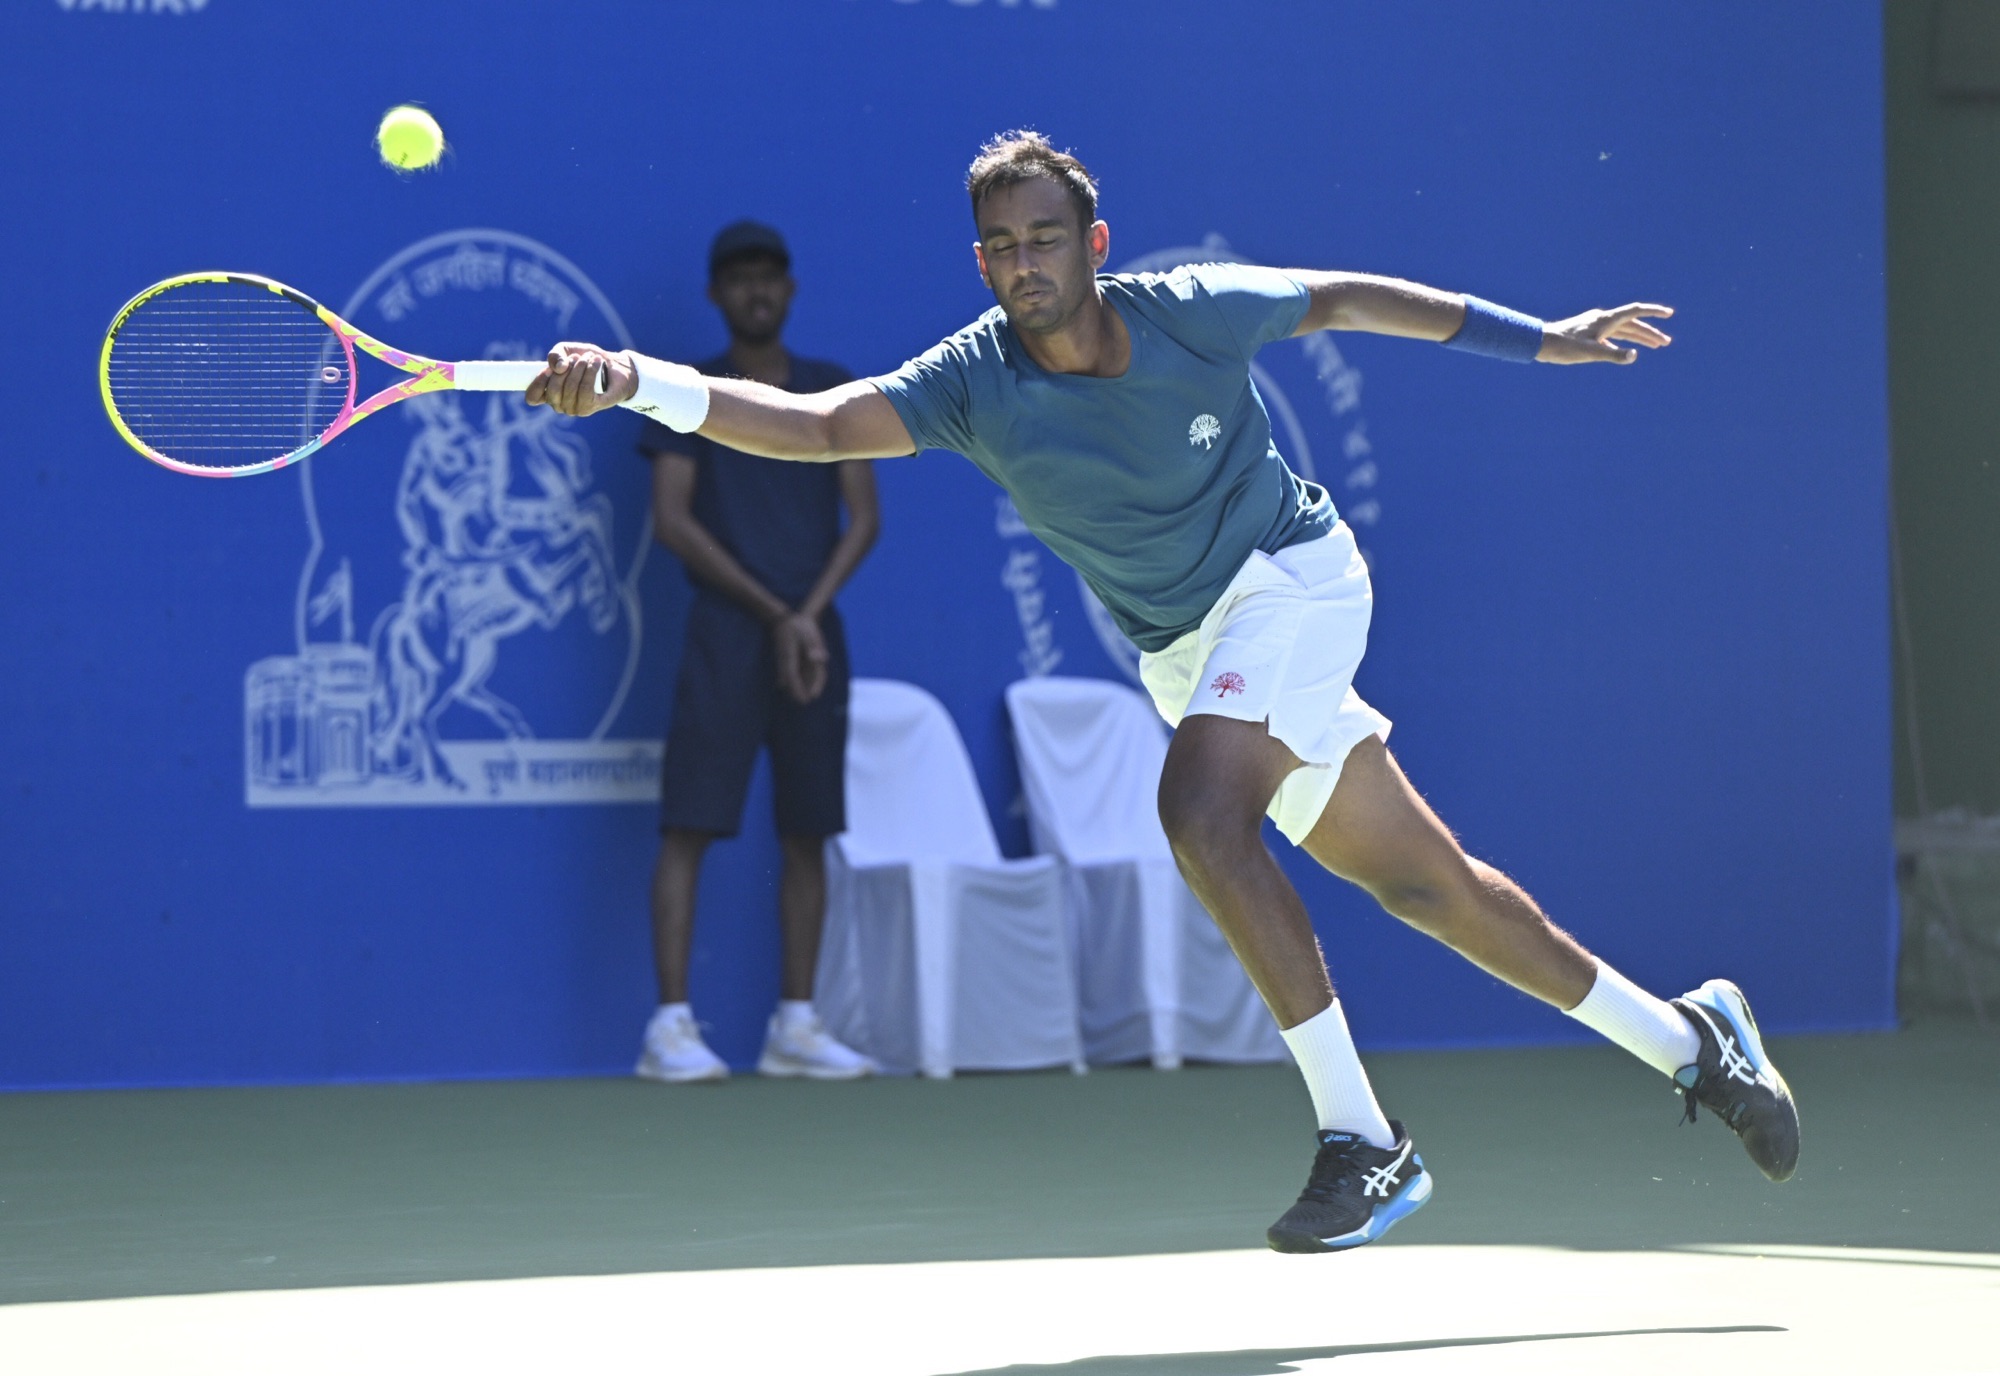 Mukund Sasikumar storms into quarter-finals at ATP Maha Open